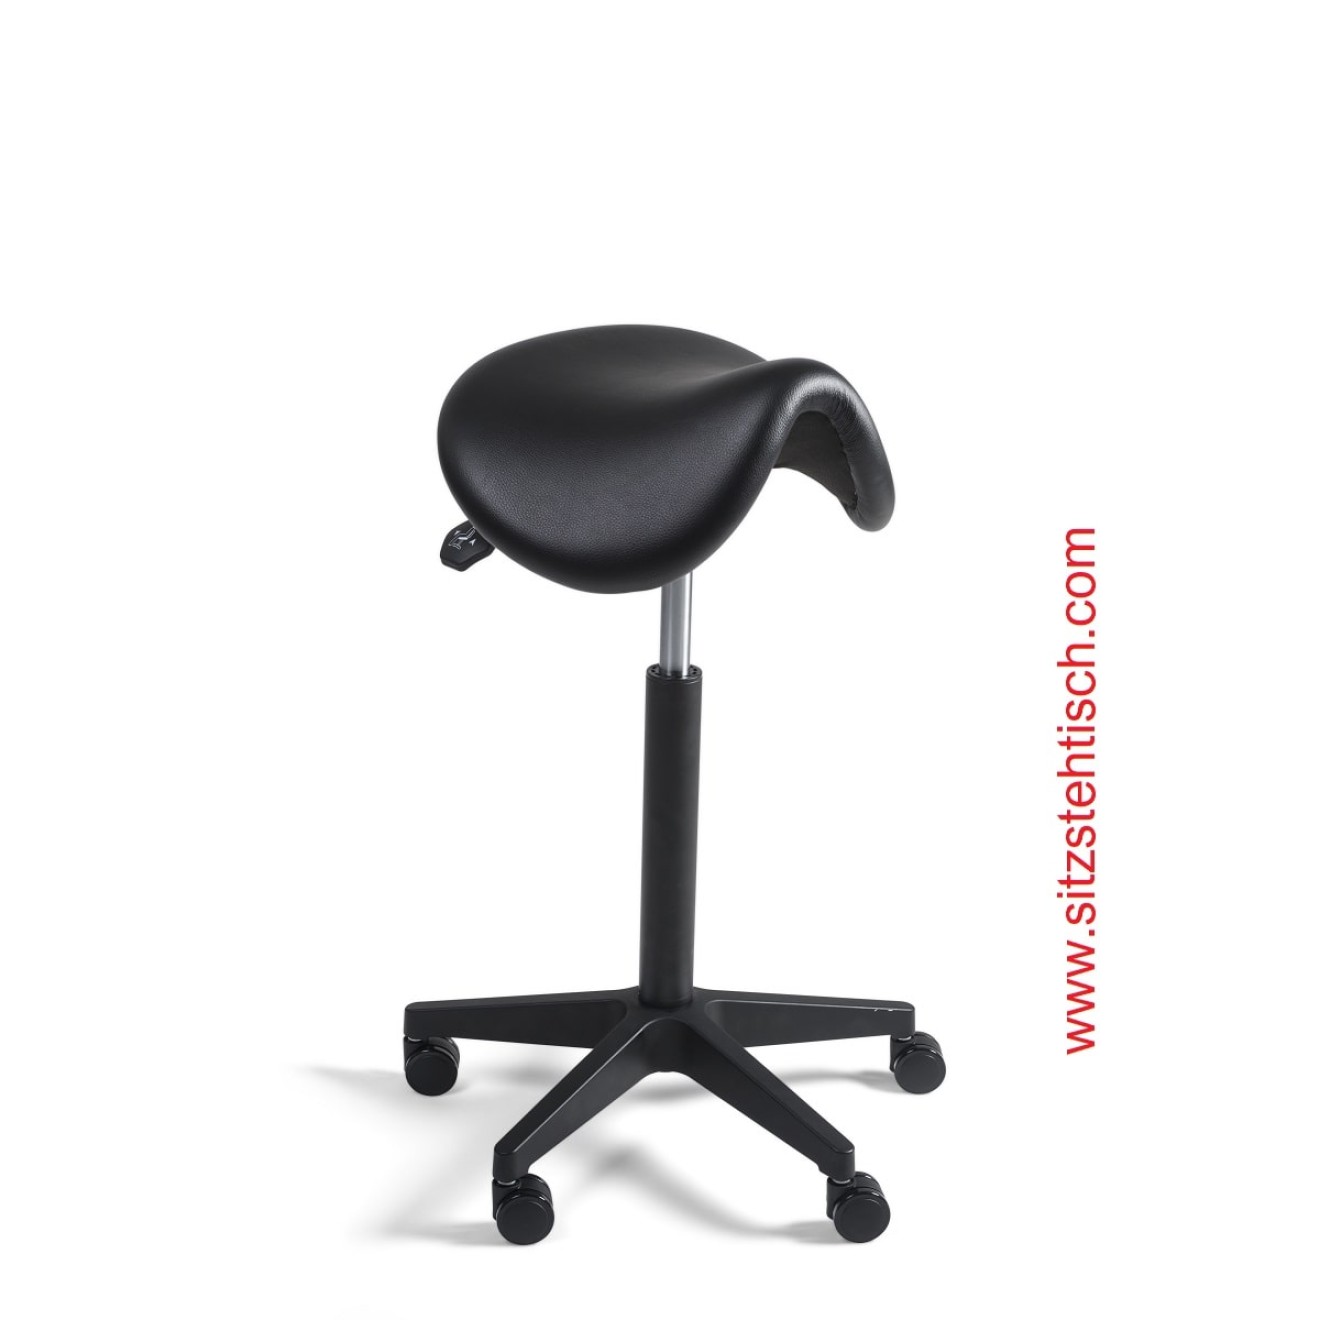 Sattelhocker mit normalen Sitz - Sitzhöhen- und Sitzwinkelverstellung - Bezug Kunstleder schwarz - Belastbarkeit bis 125 kg - 5 Jahre Garantie - 101272